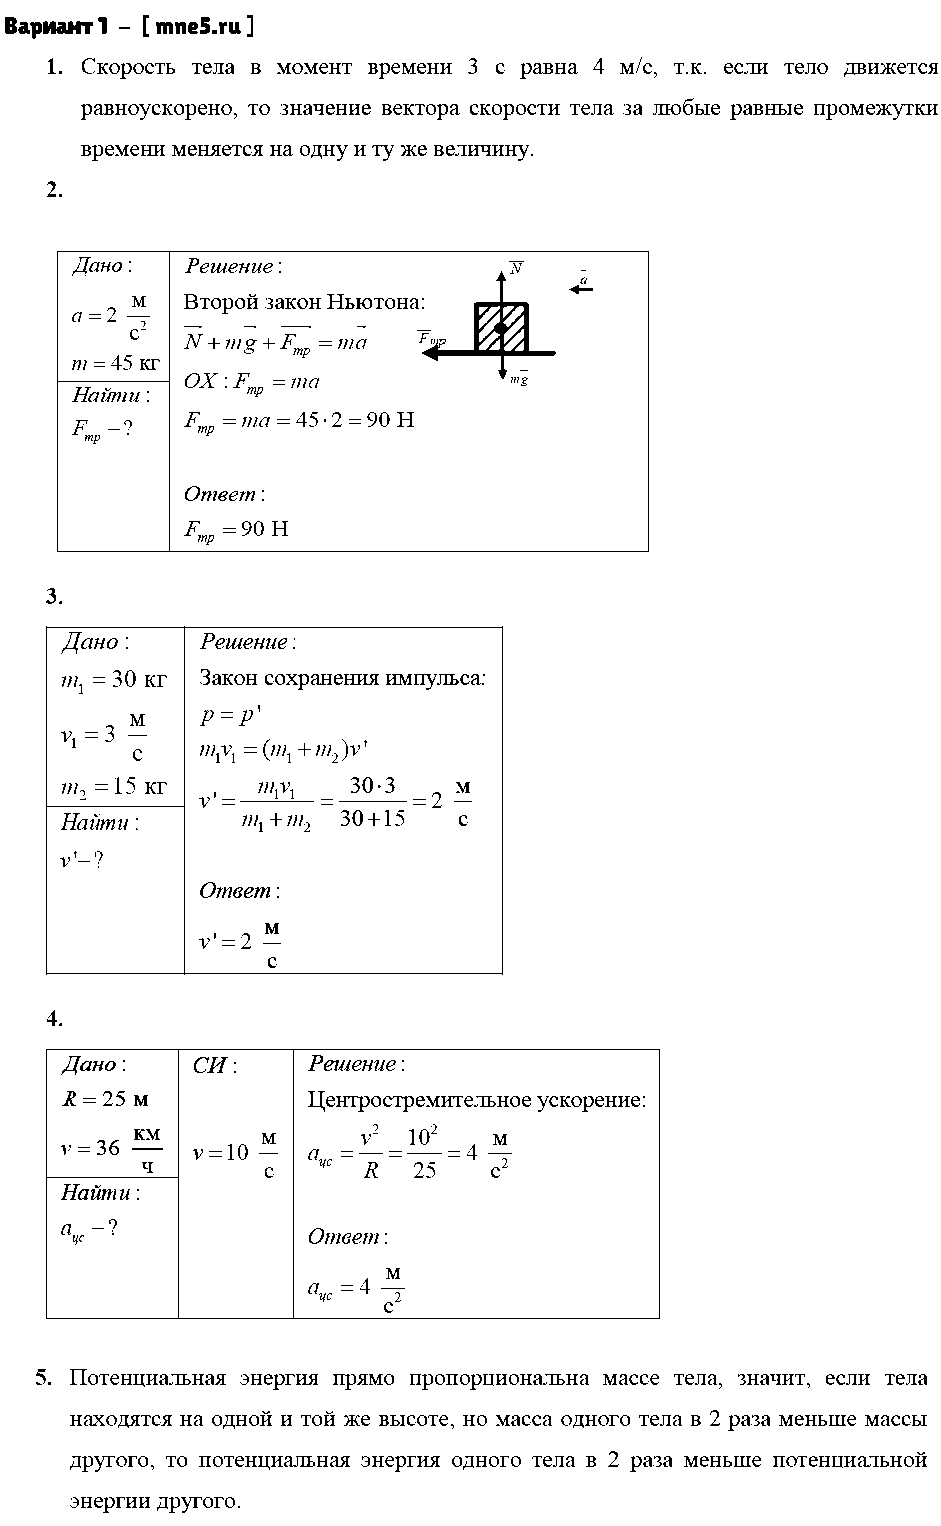 ГДЗ Физика 9 класс - Вариант 1